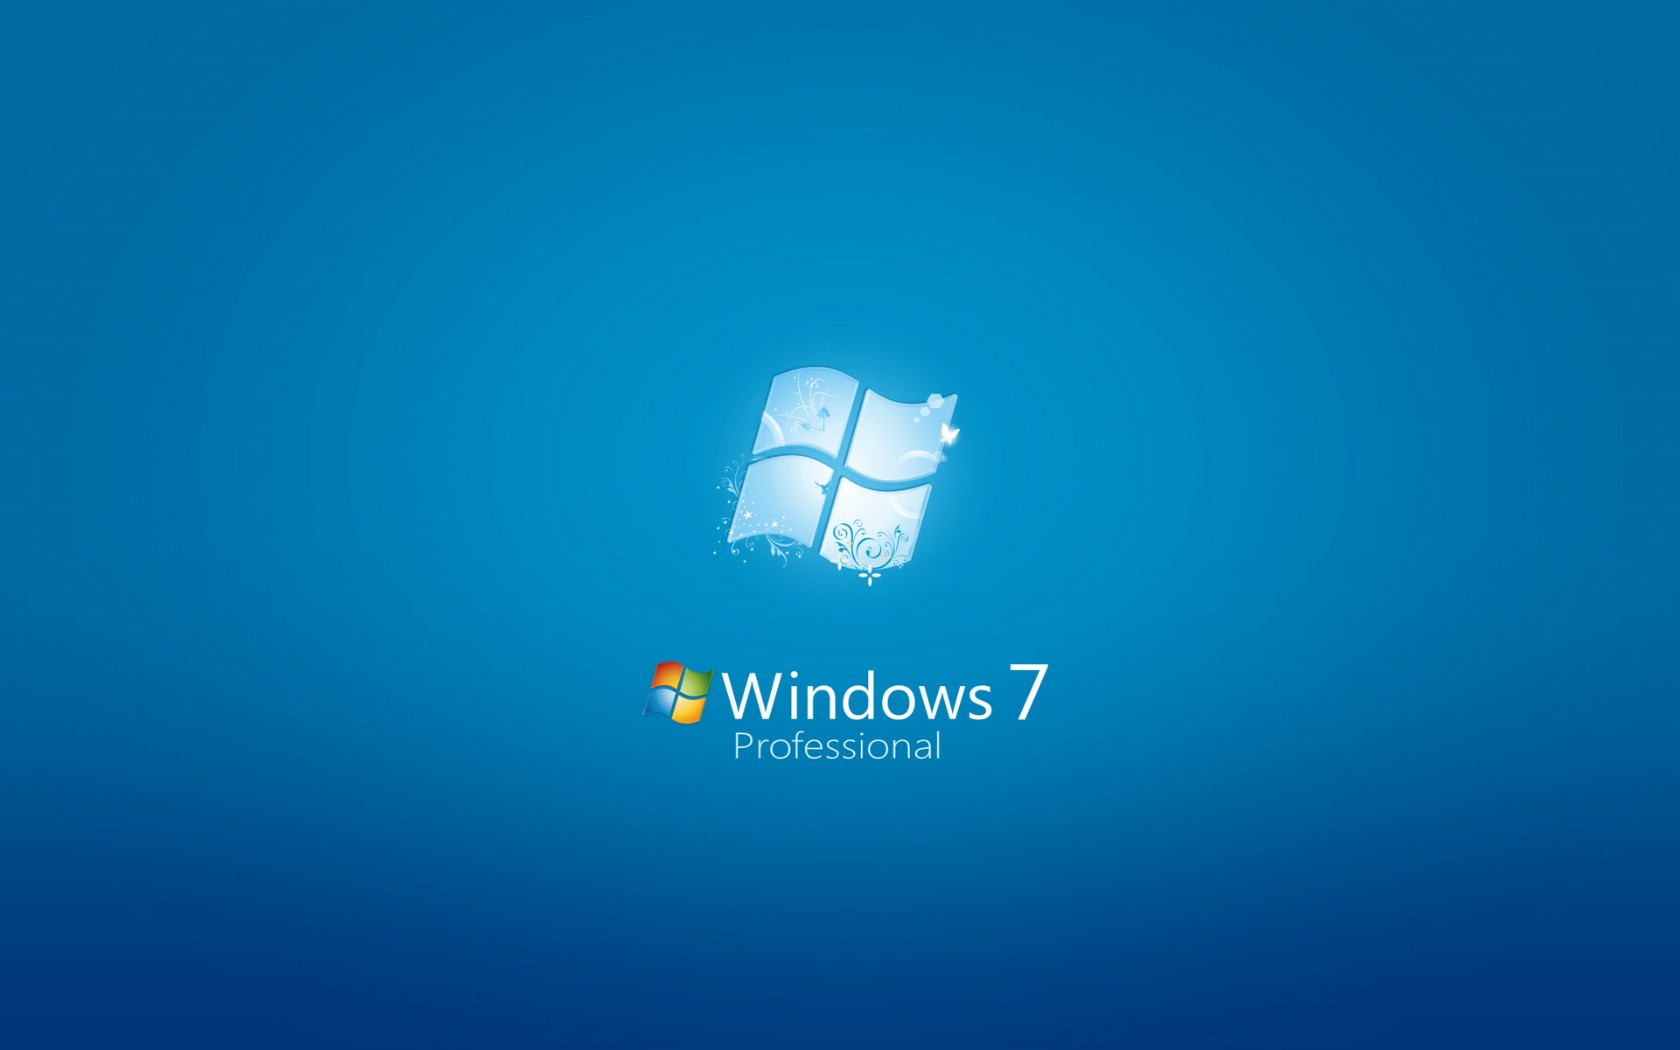 壁纸1680x1050Windows7 5 10壁纸 Windows7壁纸 Windows7图片 Windows7素材 系统壁纸 系统图库 系统图片素材桌面壁纸